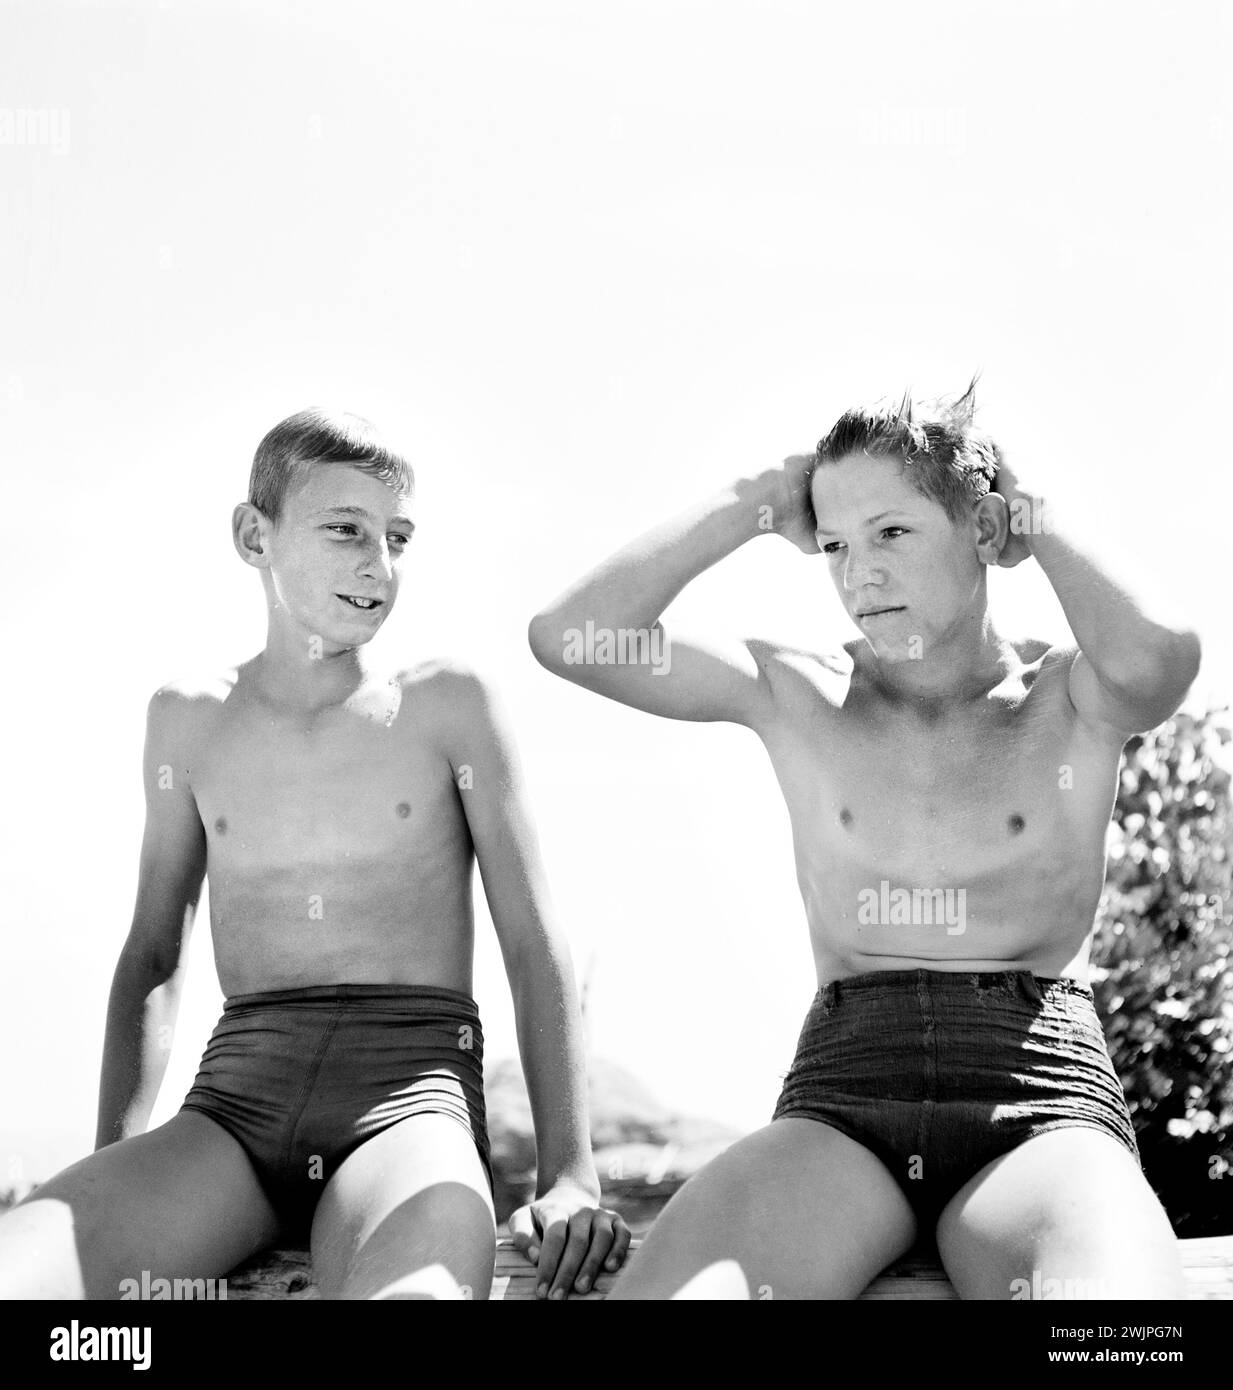 Due ragazzi adolescenti in costume da bagno che si rilassano dopo una nuotata, Rupert, Idaho, USA, Russell Lee, U.S. Farm Security Administration, luglio 1942 Foto Stock